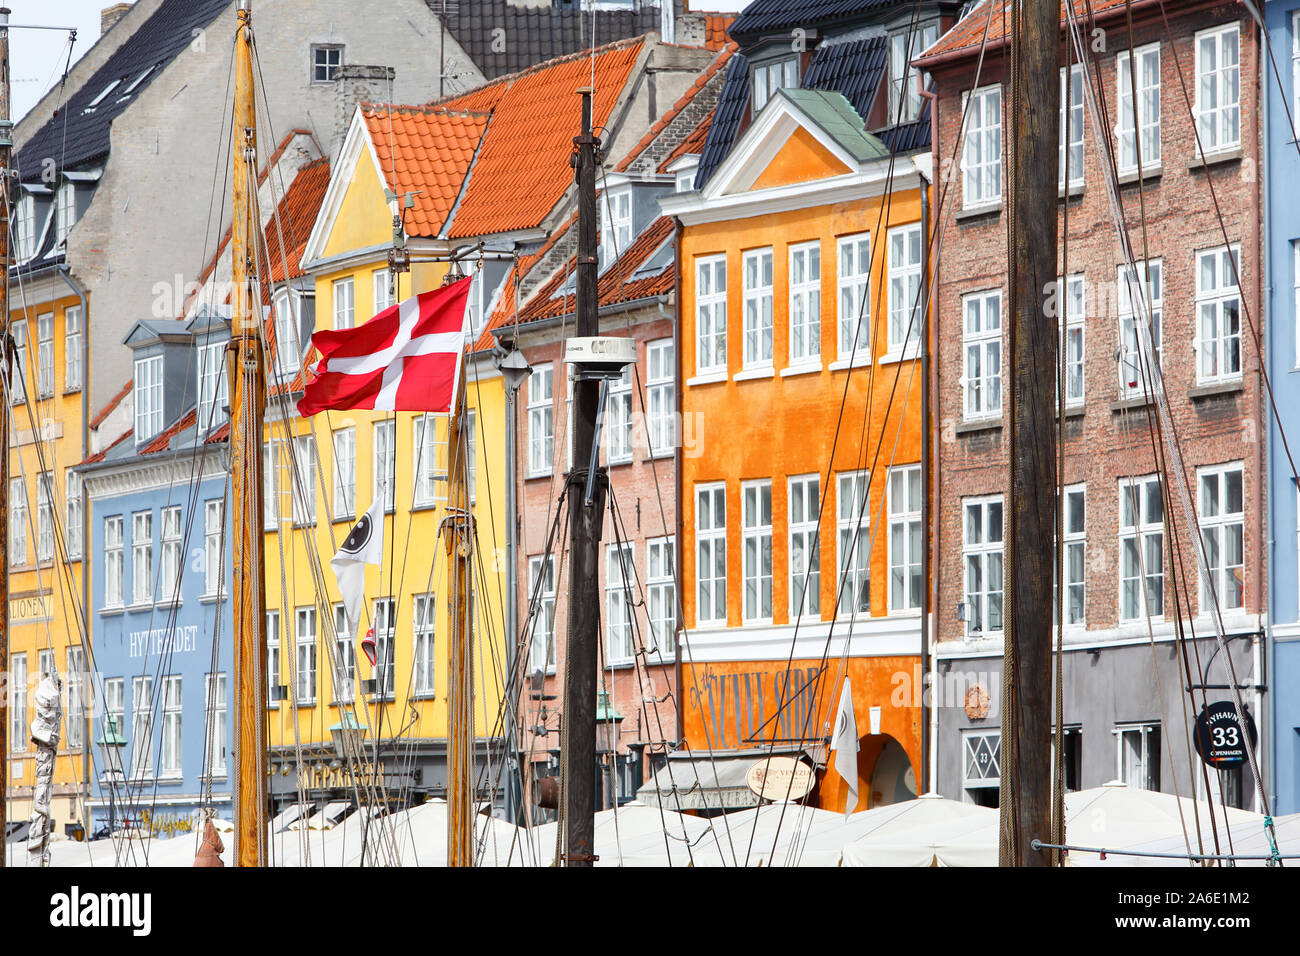 Copenhagen, Denmark - September 4, 2019: Dansh flag in one of the ships masts in the Nyhavn harbor area. Stock Photo